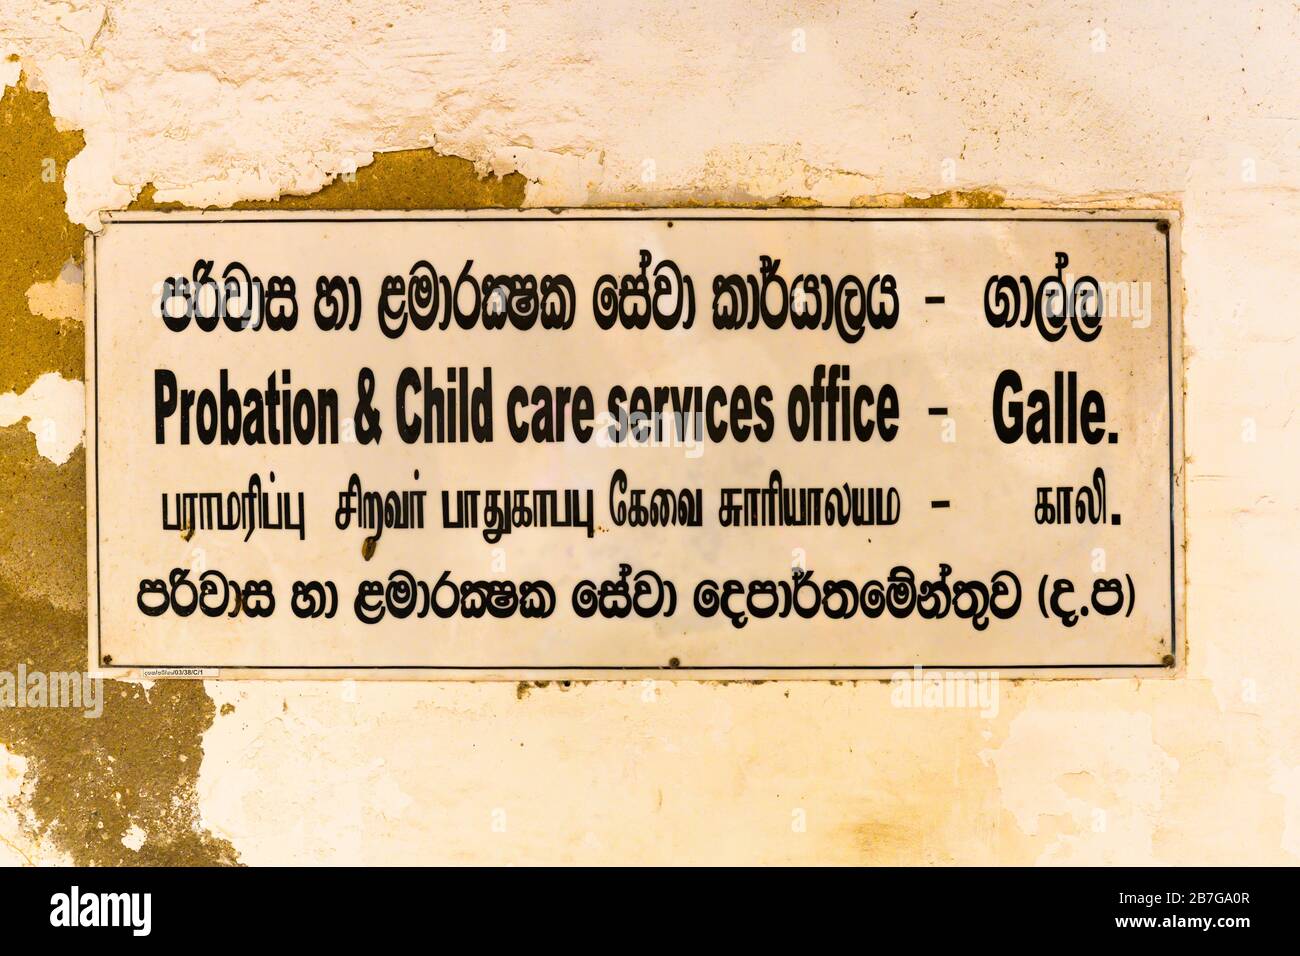 Südasien Sri Lanka Fort Galle koloniale Stadtzentrum alten alten Hafen Probation & Kinderbetreuung Service 4 Sprachen Skript Sozialdienste Büro Stockfoto